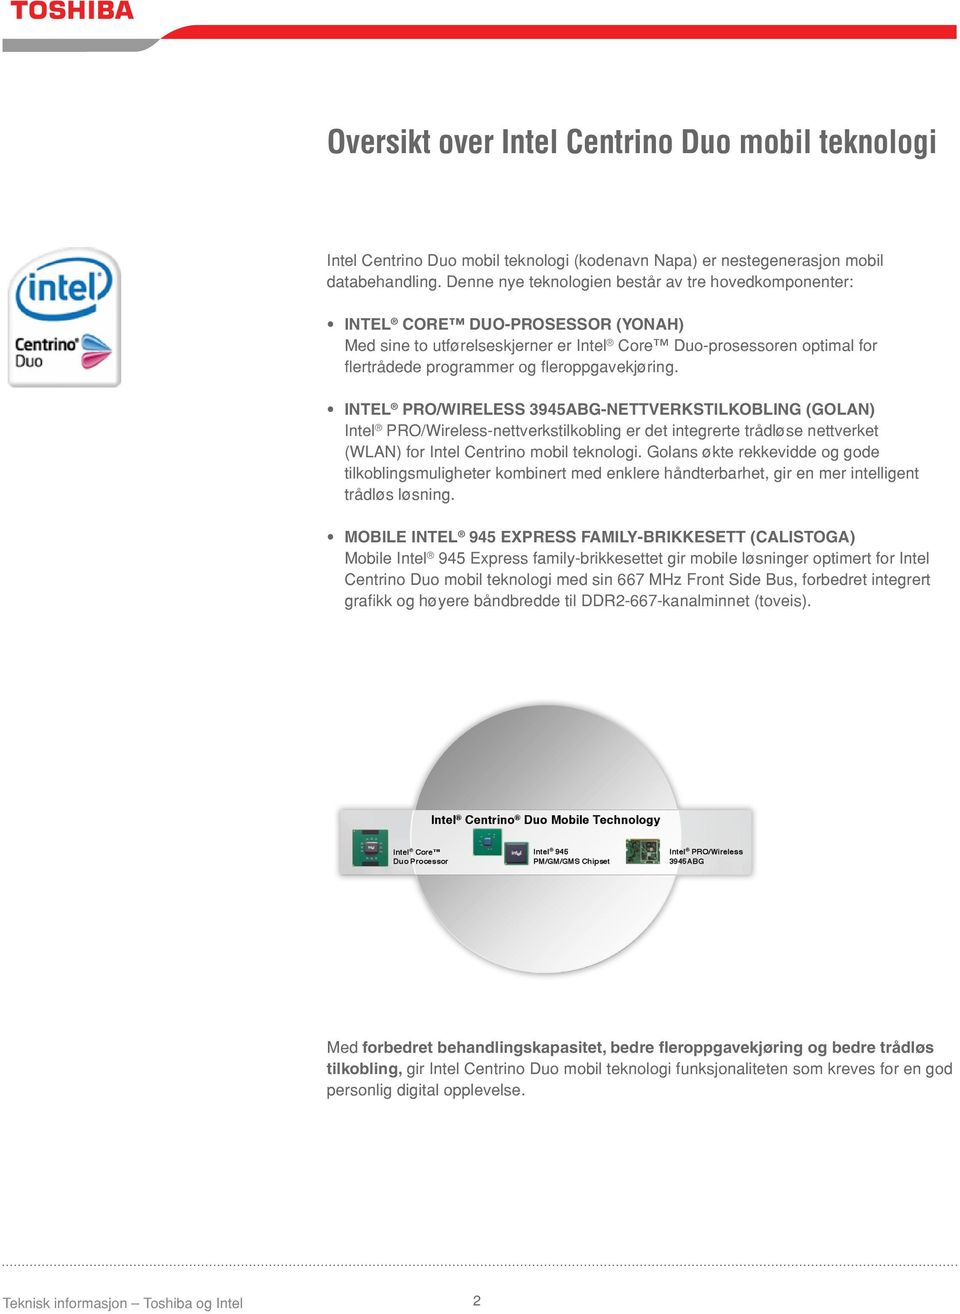 fleroppgavekjøring. INTEL PRO/WIRELESS 3945ABG-NETTVERKSTILKOBLING (GOLAN) Intel PRO/Wireless-nettverkstilkobling er det integrerte trådløse nettverket (WLAN) for Intel Centrino mobil teknologi.